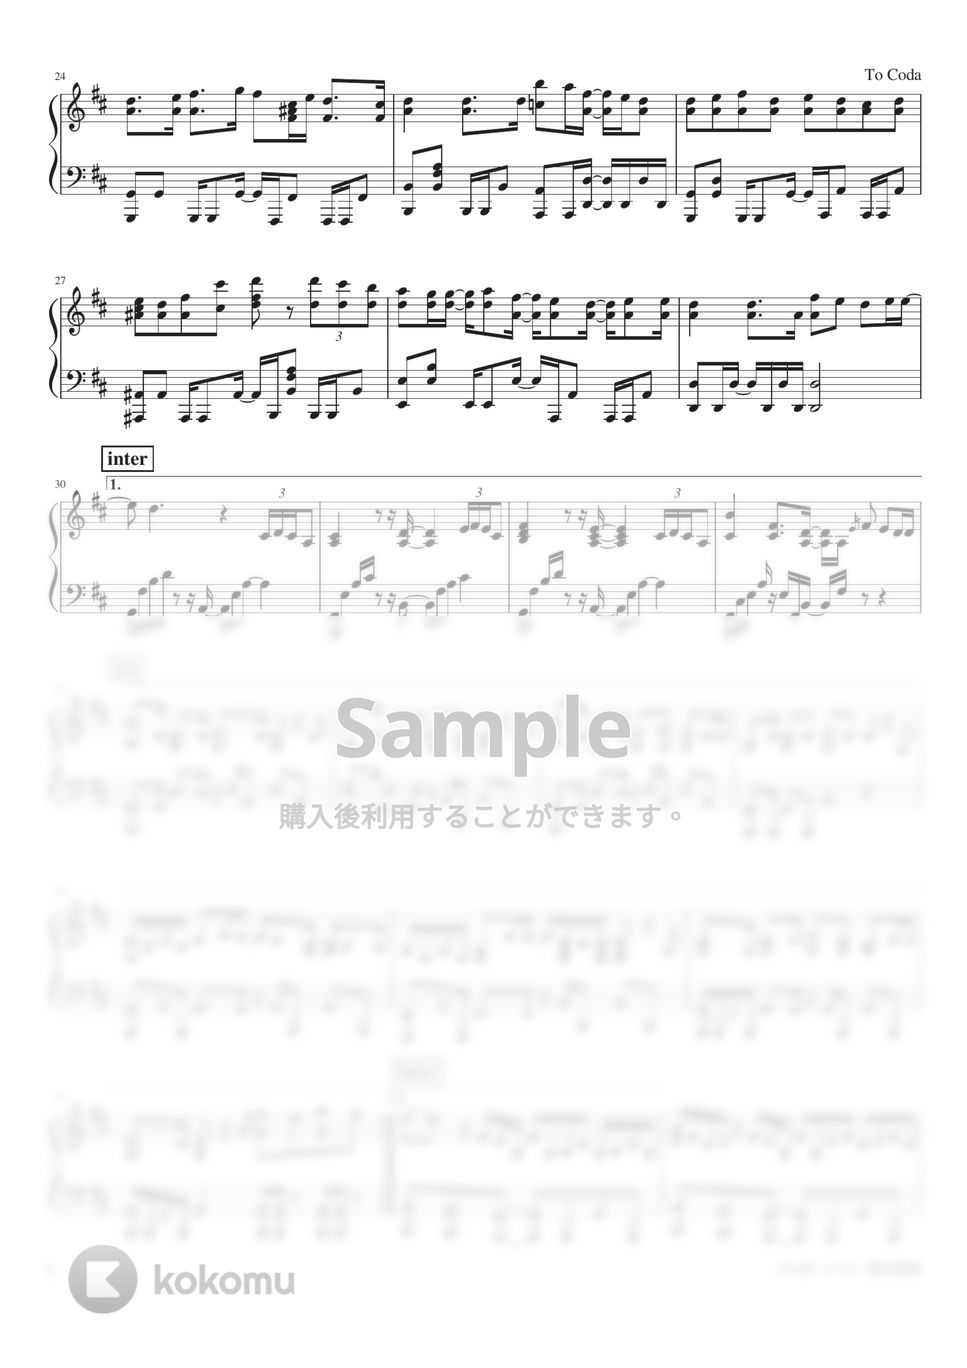 夏代孝明 - ジャガーノート (Piano Solo) by 深根 / Fukane